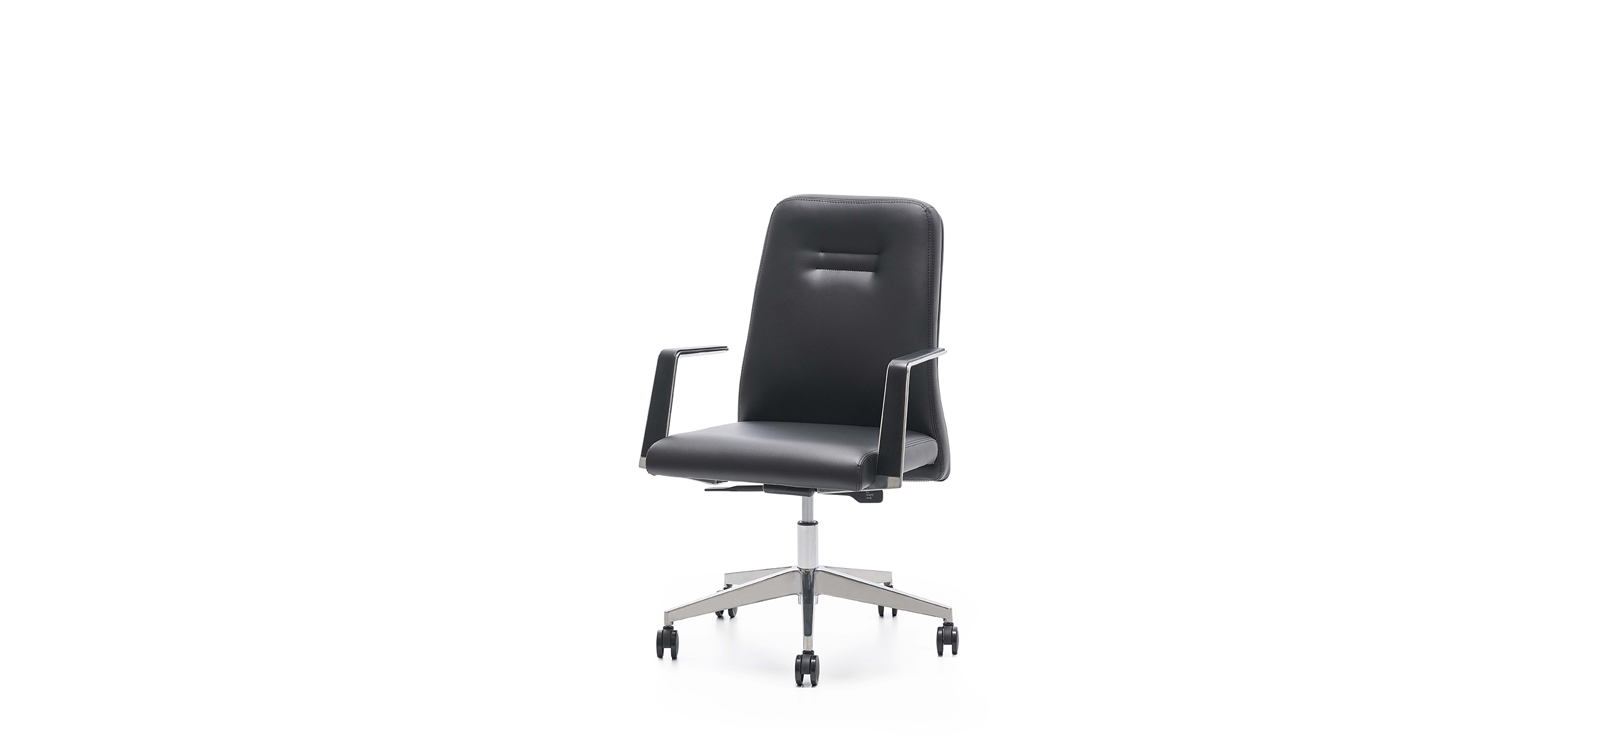 Meet - Office Chair